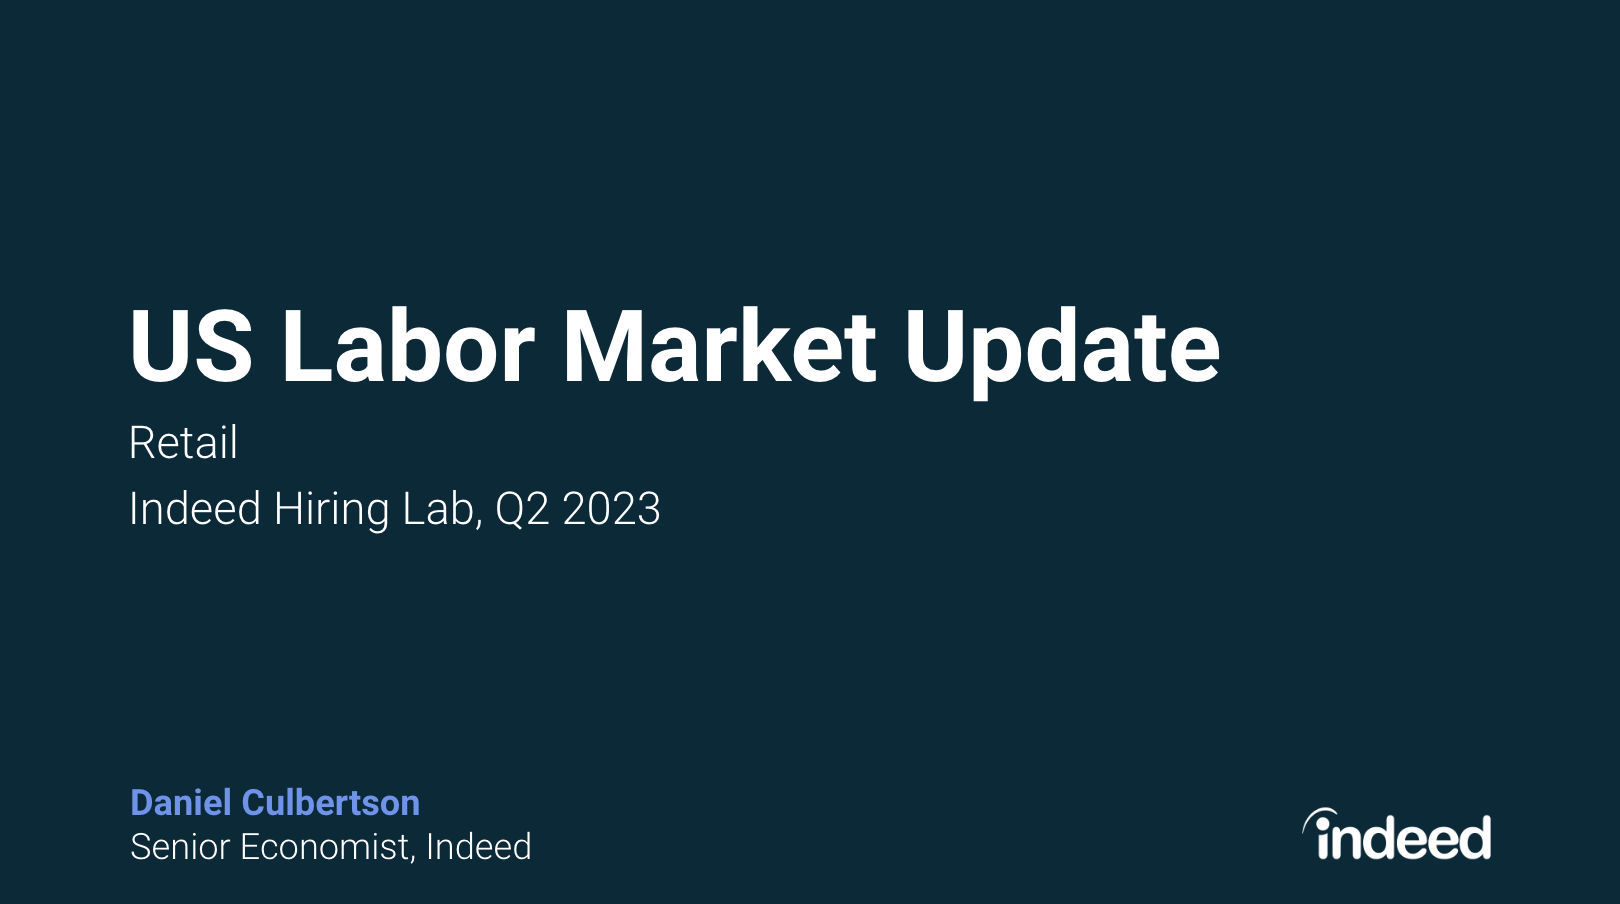 US Retail Labor Market Update Q2 2023